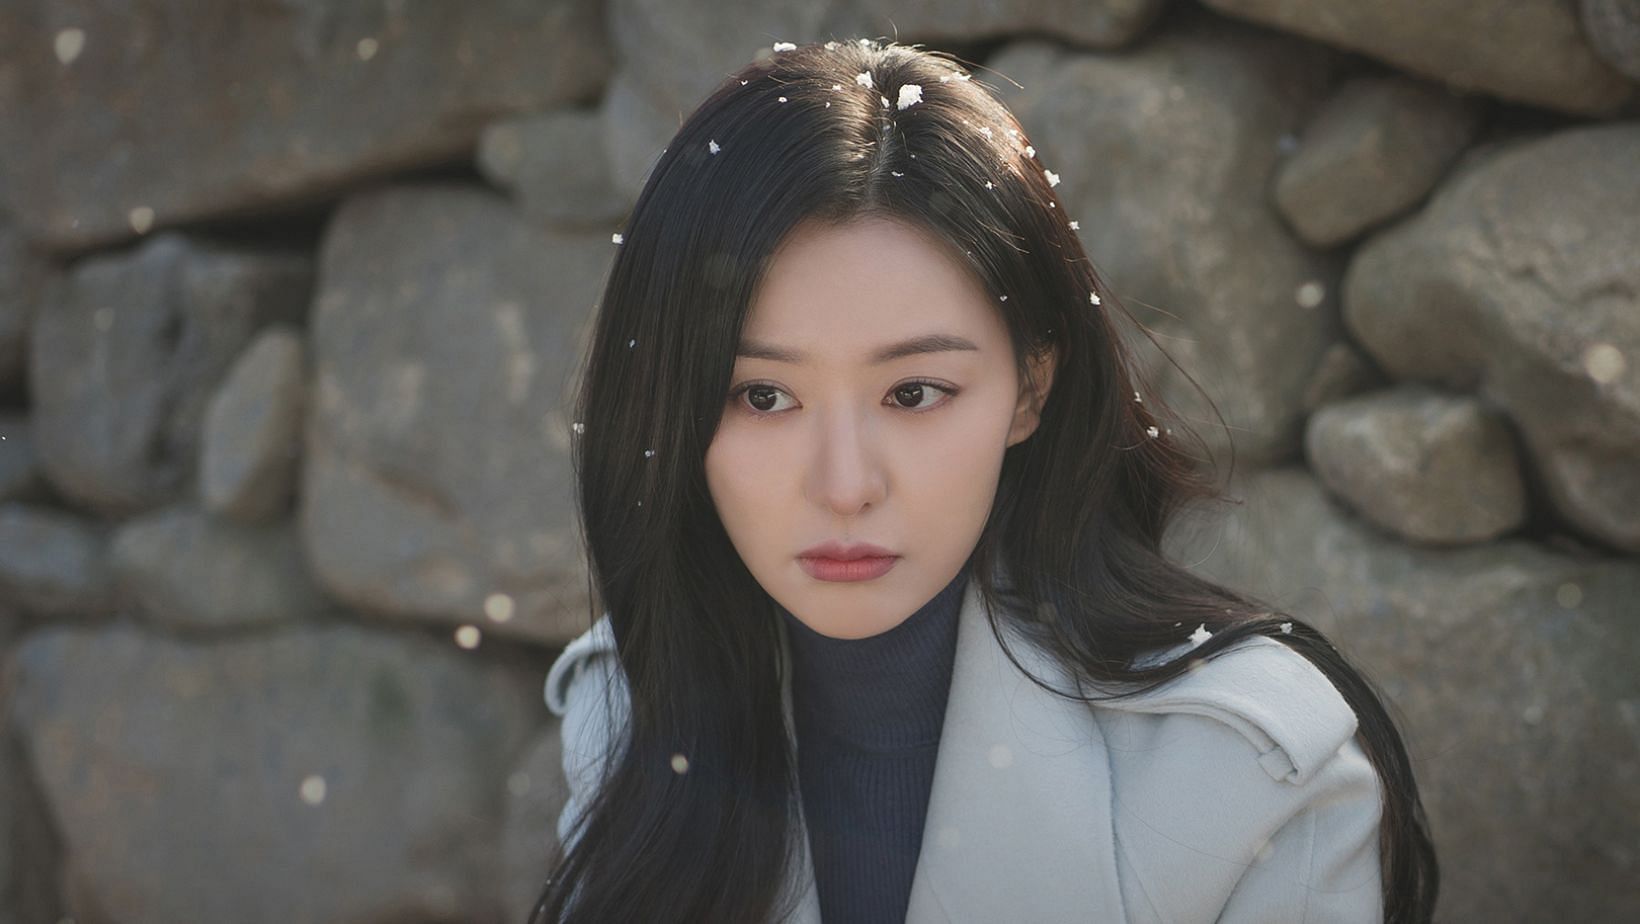 Kim Ji-won (Image via X/@CJnDrama)